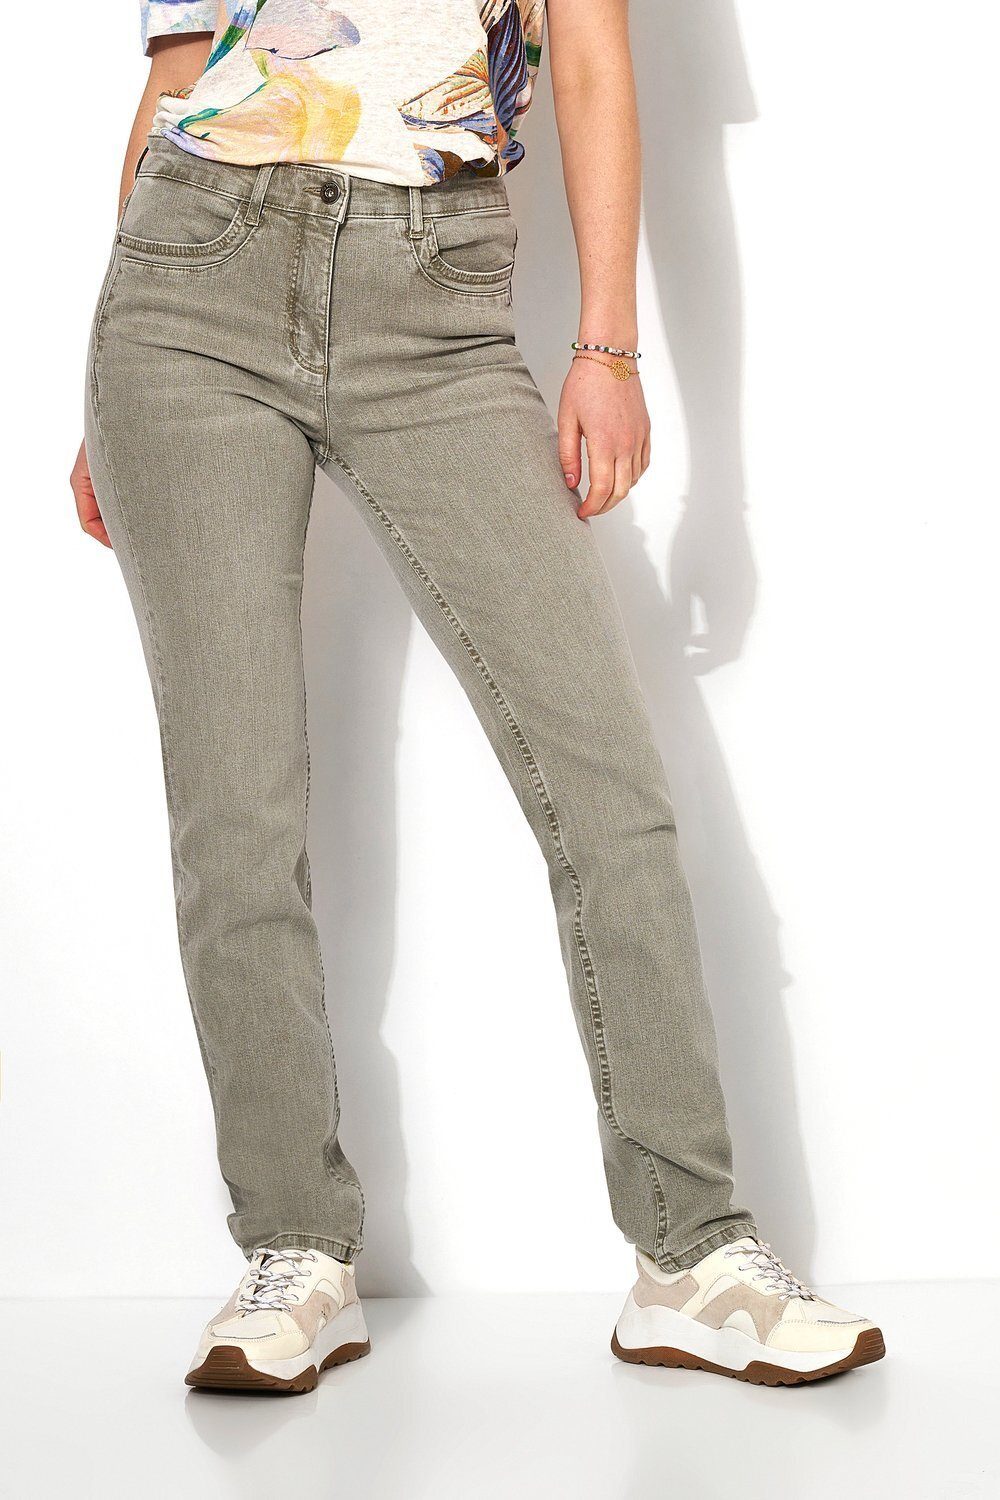 TONI 5-Pocket-Jeans be loved mit raffinierten Taschennähten khaki - 642